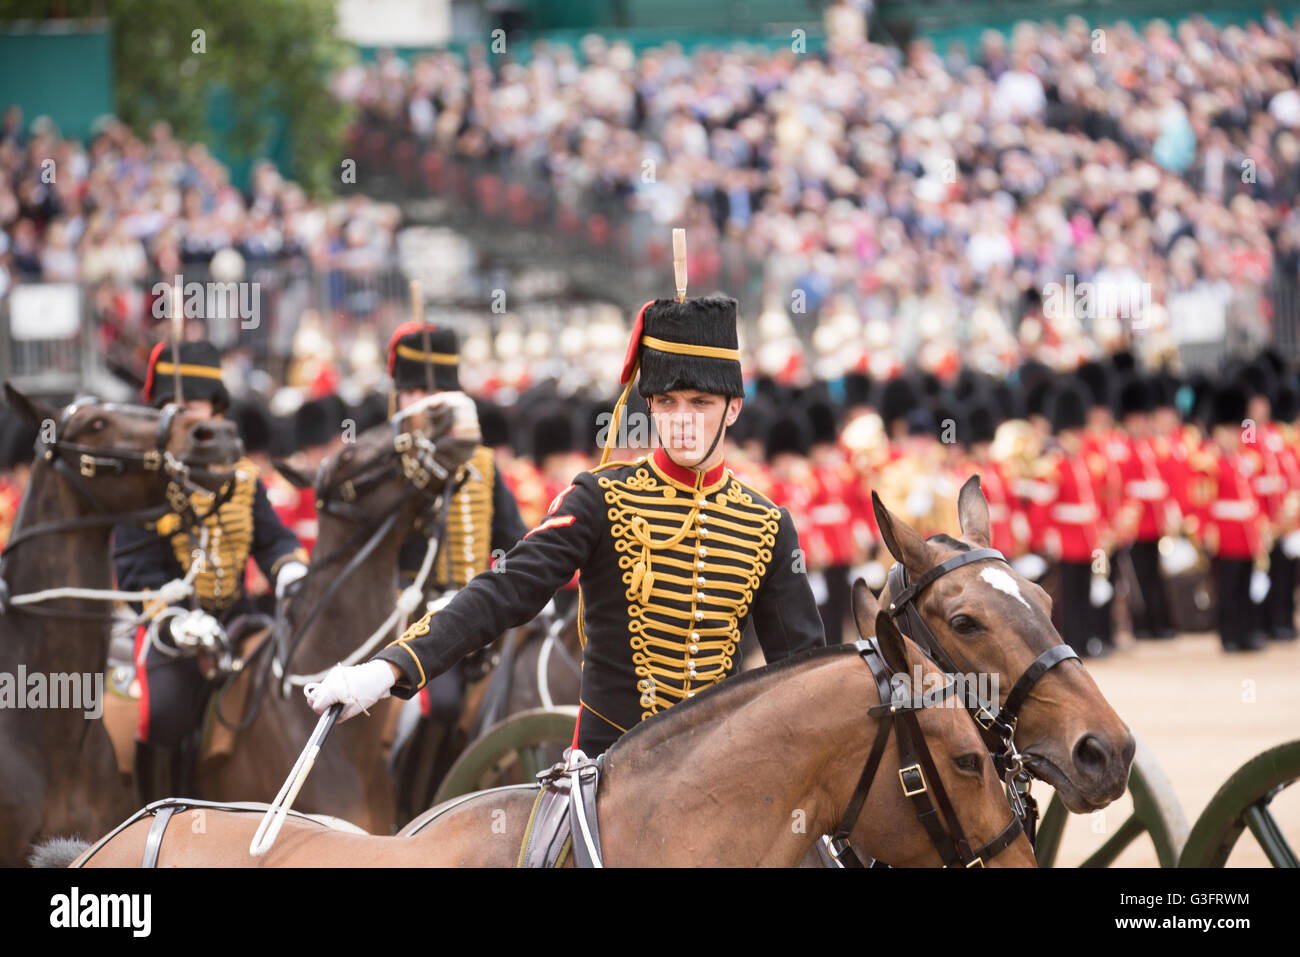 Londres, Reino Unido, 11 de junio, cumpleaños de la Reina; el desfile de las tropas del rey de artillería real de crédito: Ian Davidson/Alamy Live News Foto de stock